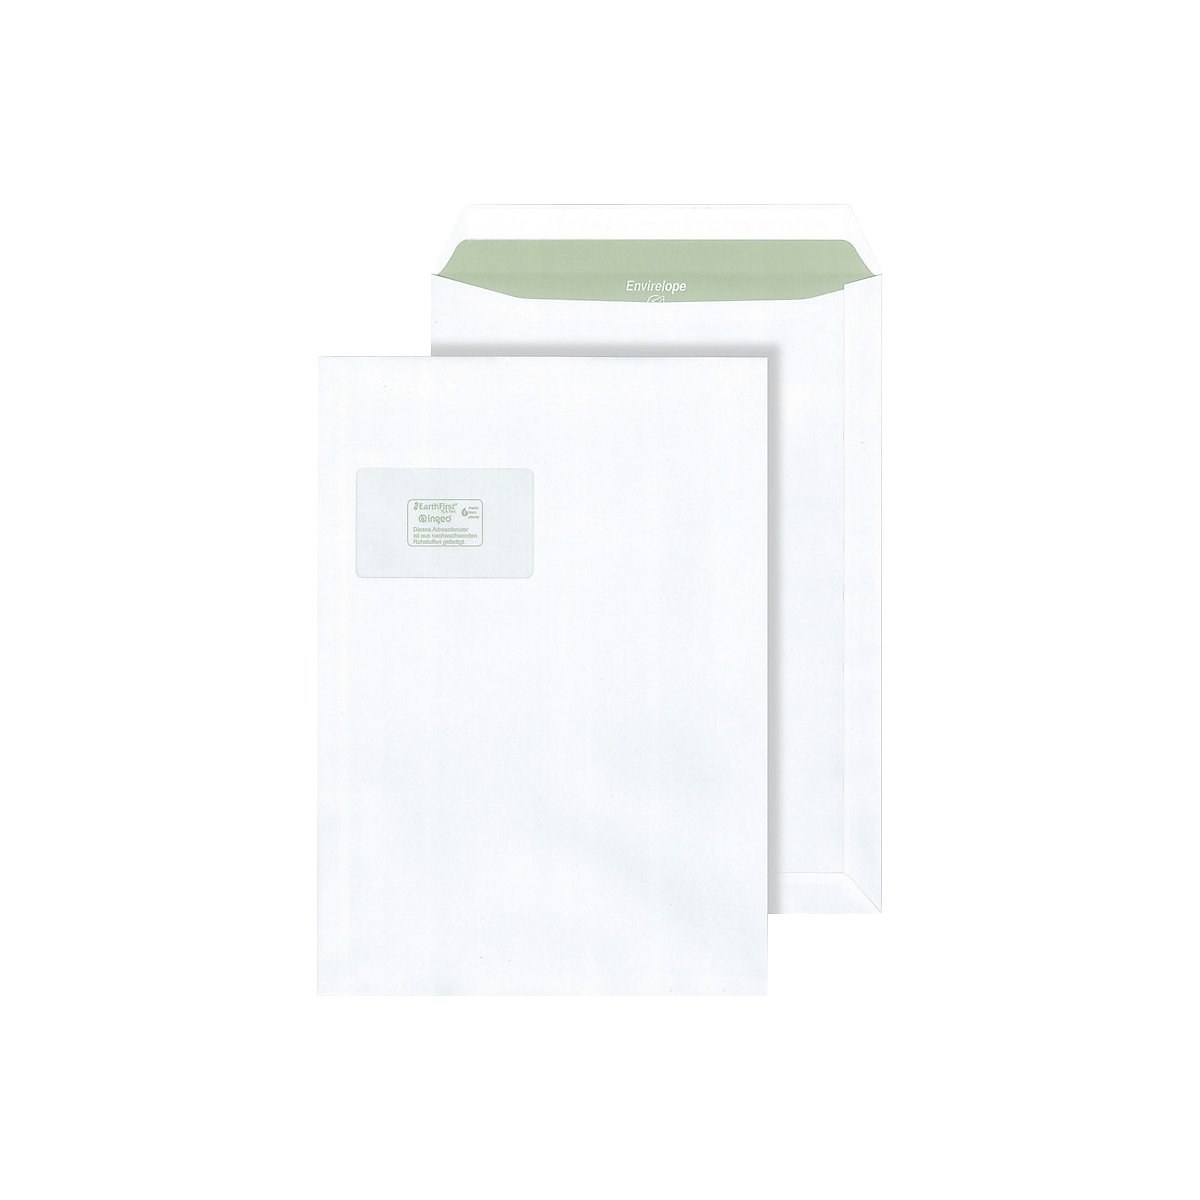 Briefumschläge Envirelope® terra, weiß, mit Fenster, Format C4, VE 250 Stk, ab 10 VE-2